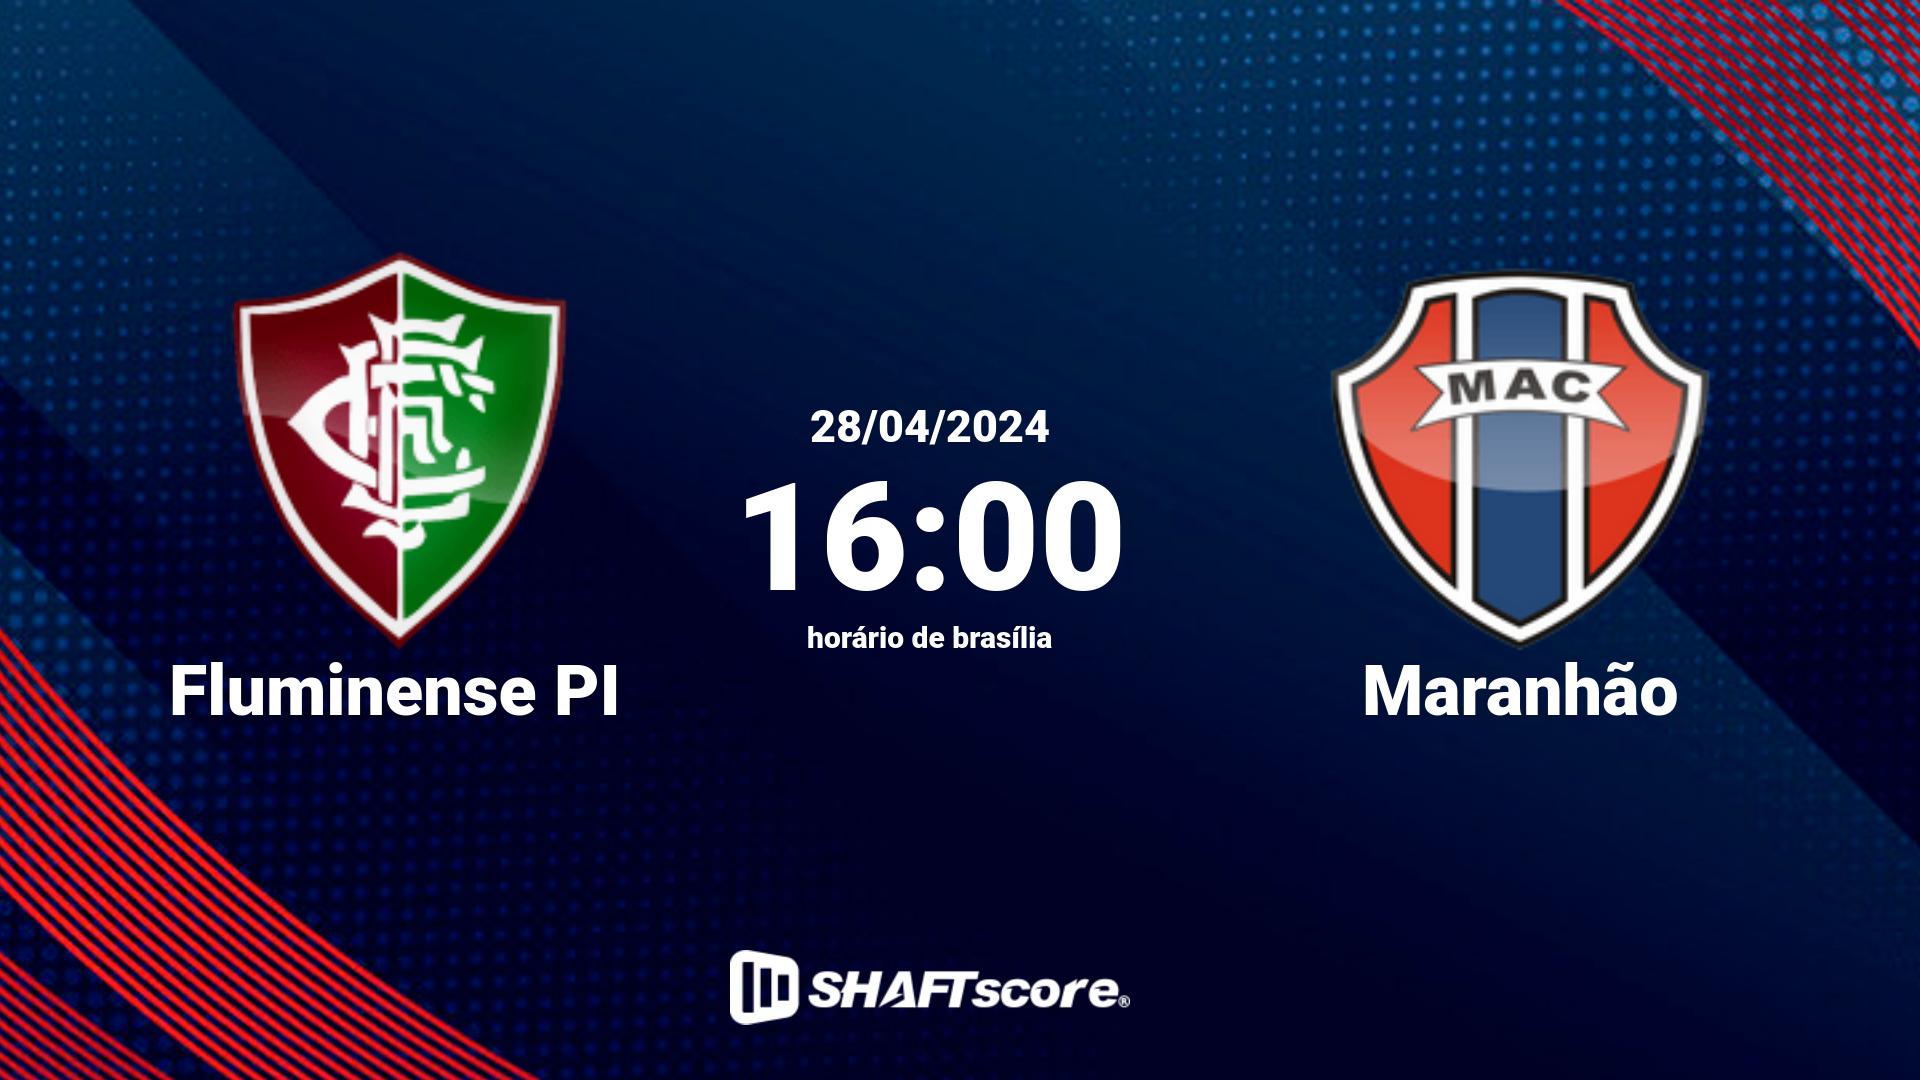 Estatísticas do jogo Fluminense PI vs Maranhão 28.04 16:00